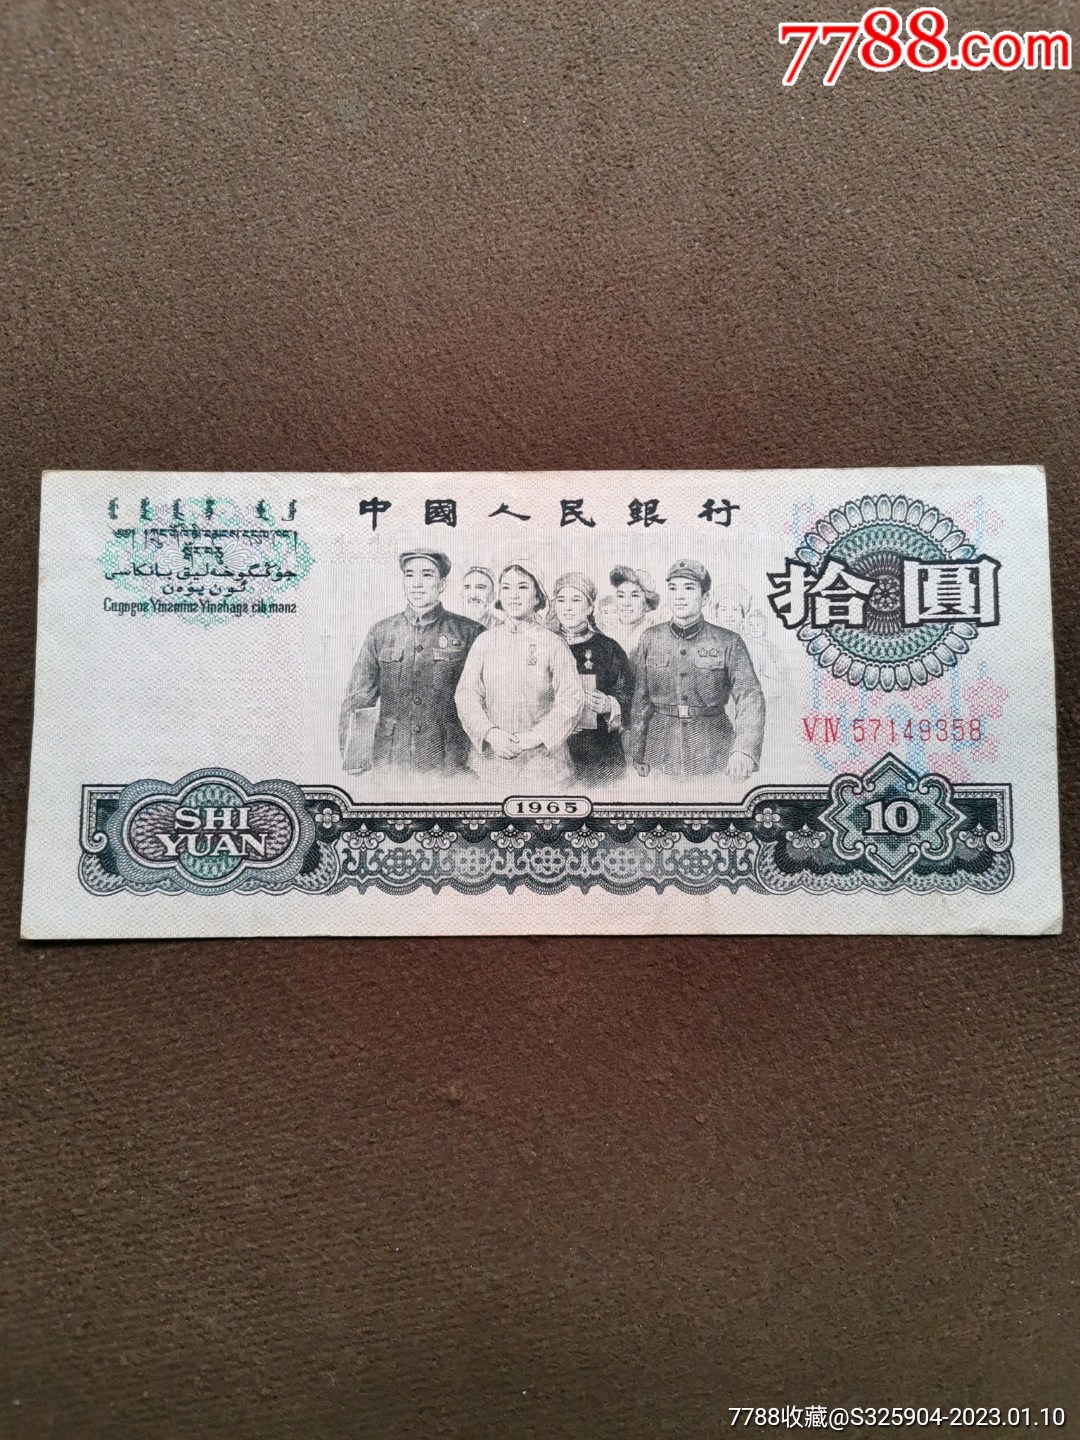 10元人民币表情包图片